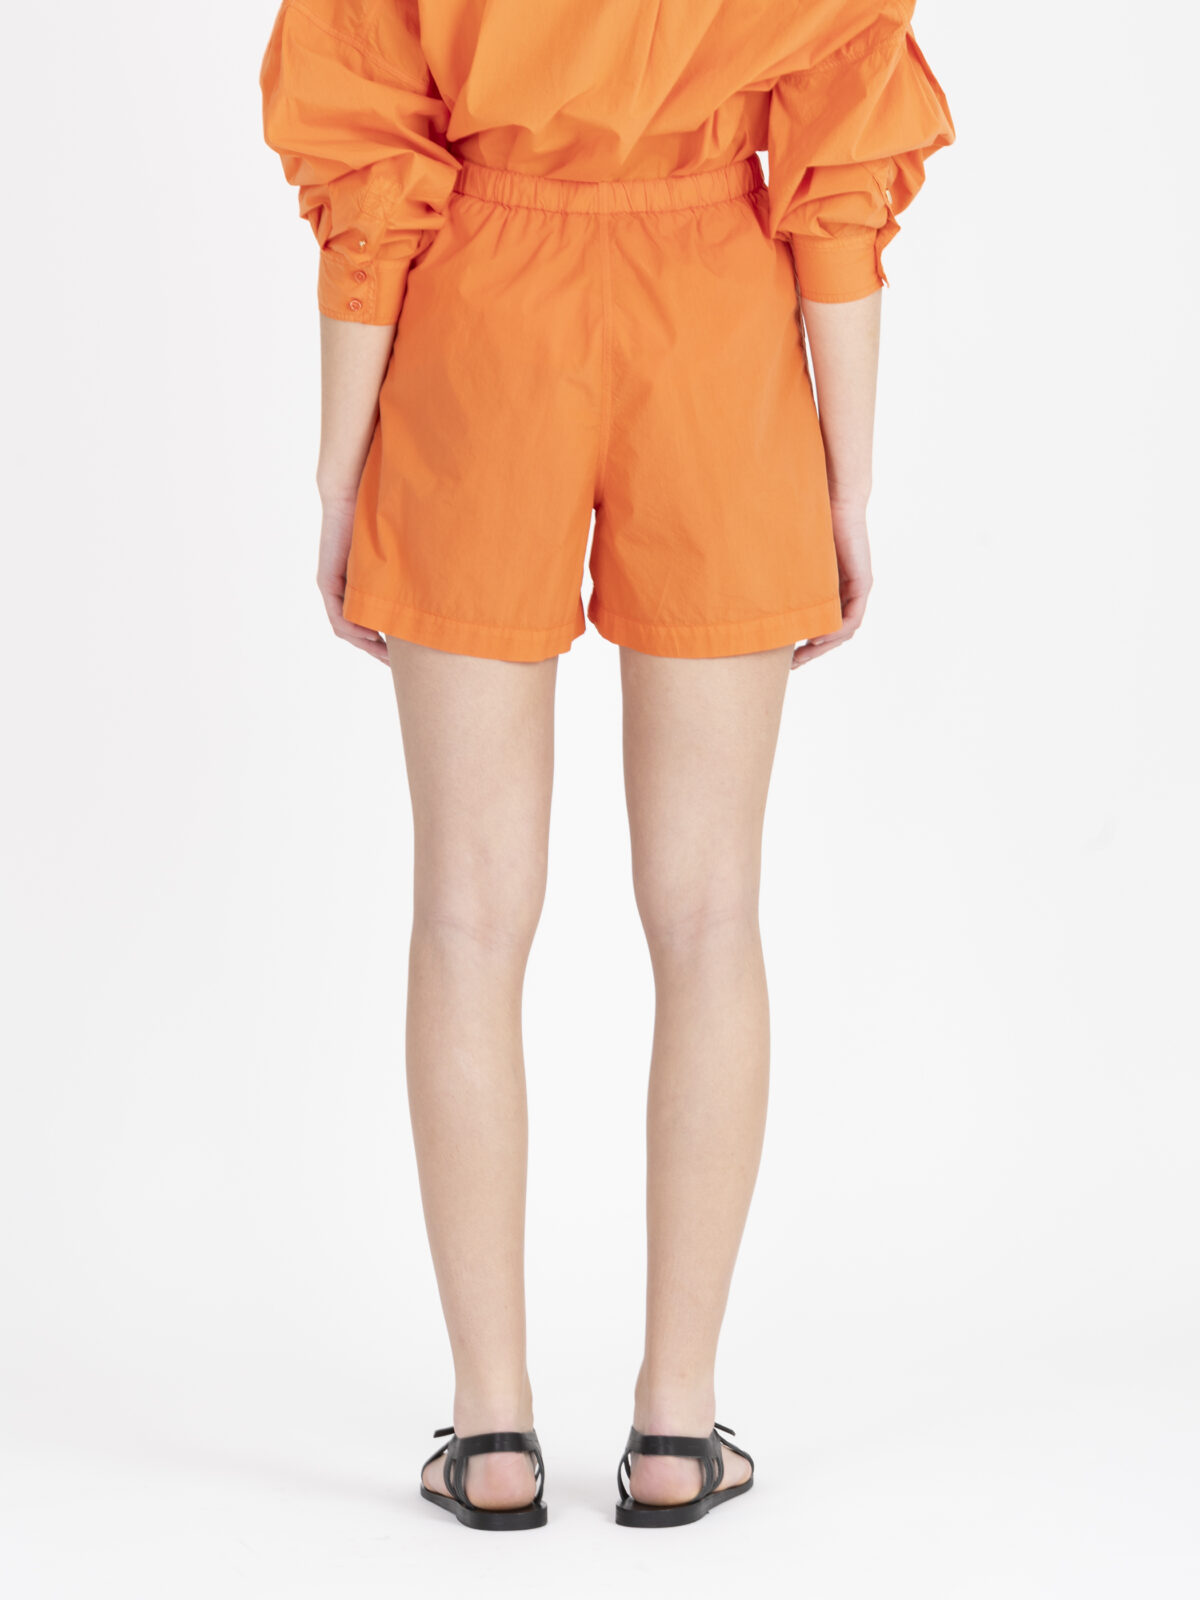 hyogo-shorts-orange-cotton-pockets-elastic-sessun-matchboxathens